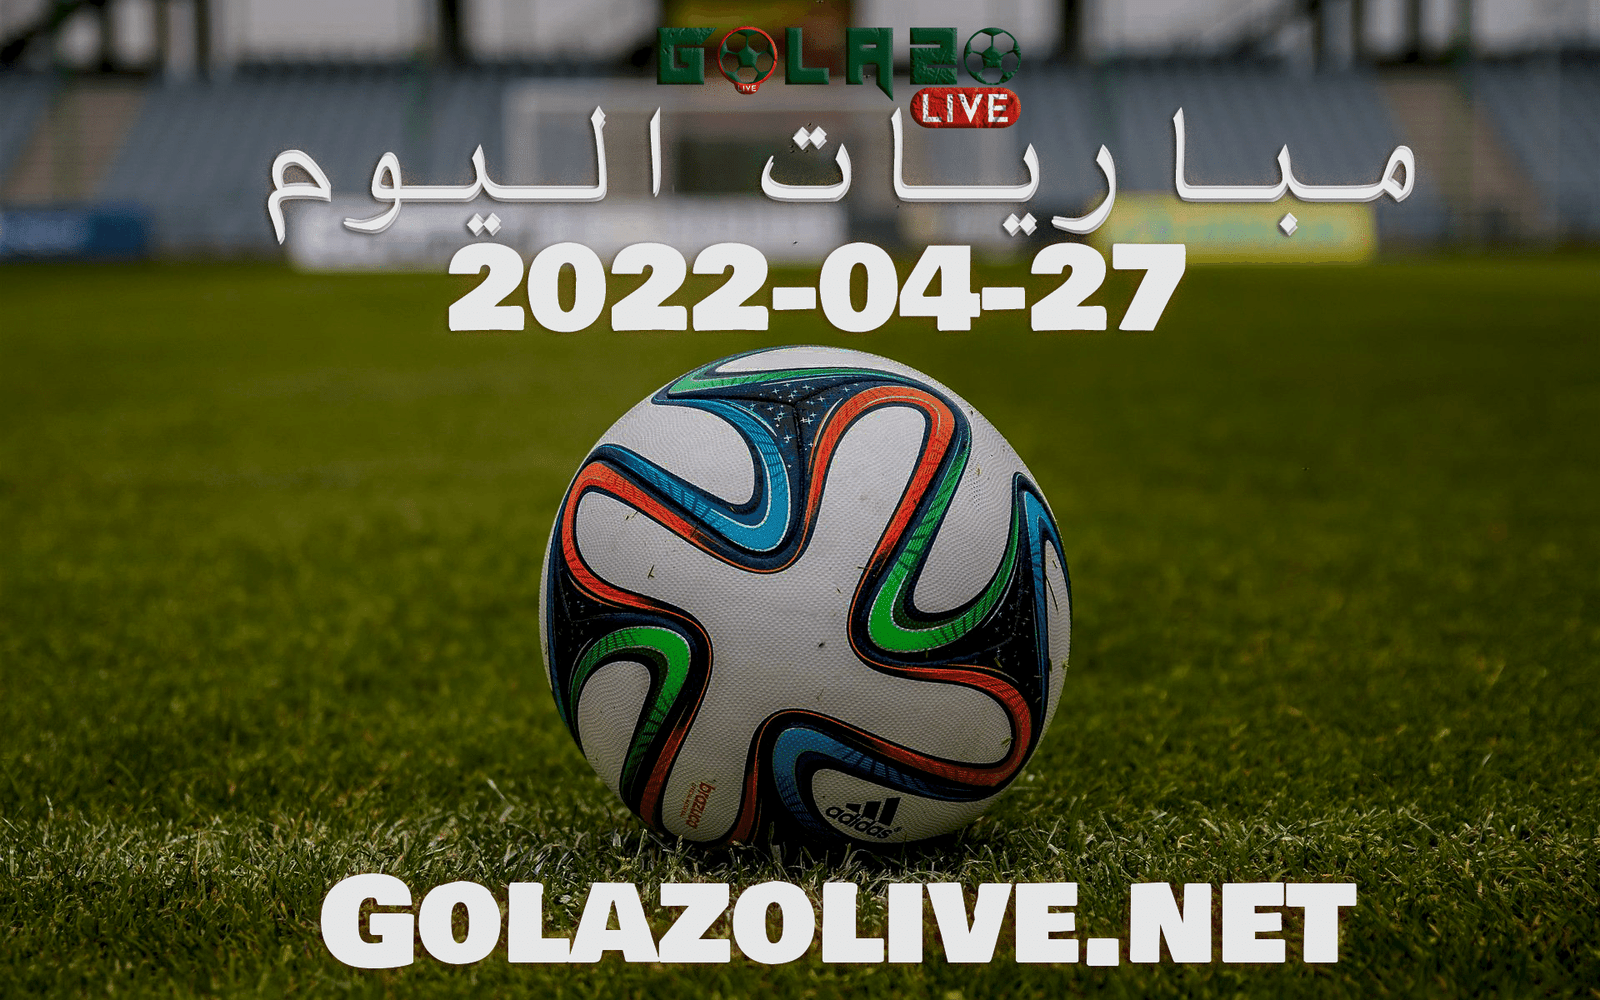 بث مباشر مباريات اليوم جول العرب كورة لايف يلا شوت العرب كورة جول اليوم 27-04-2022